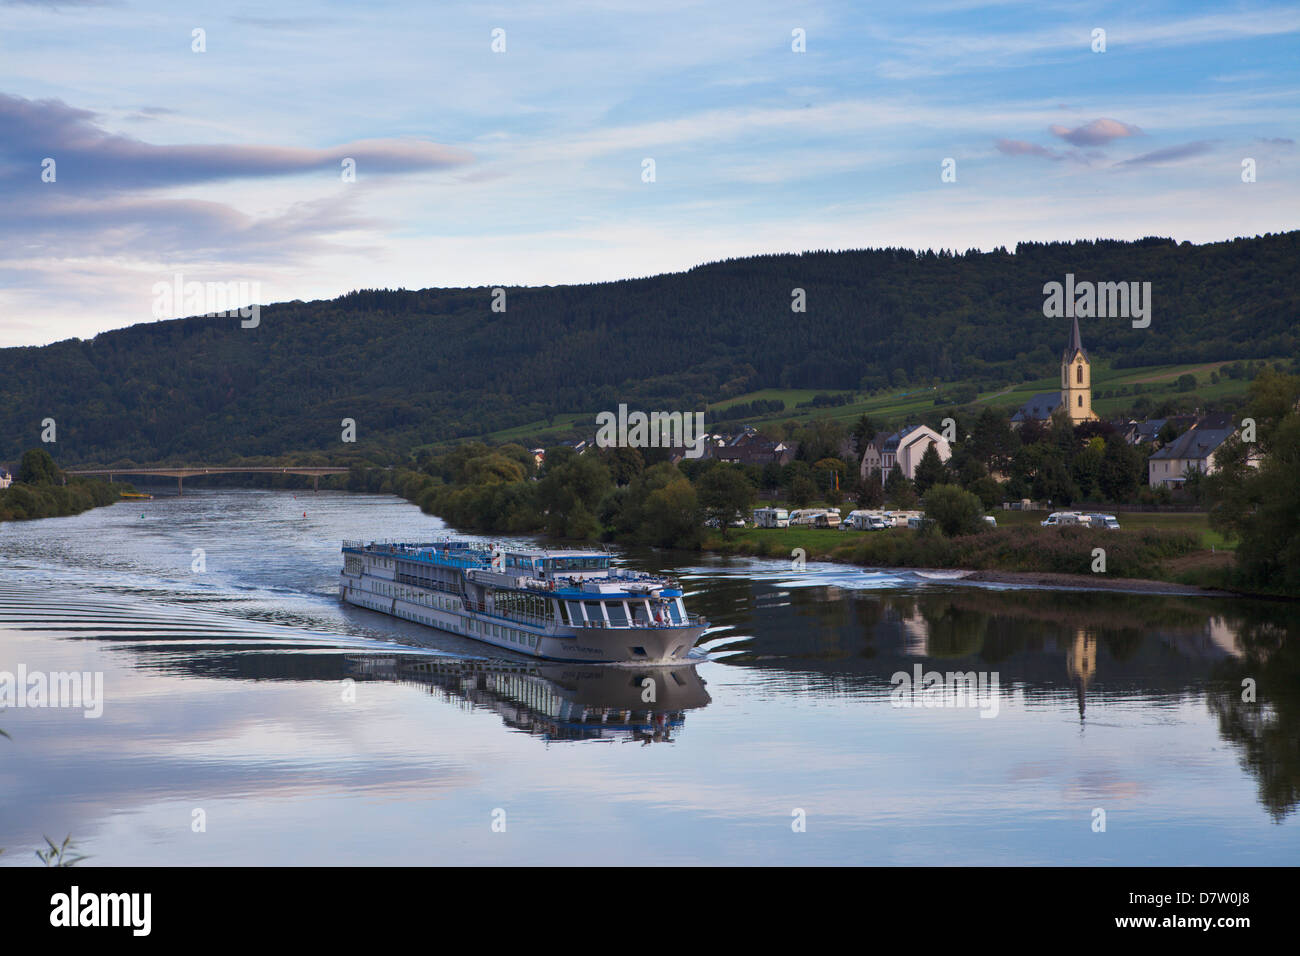 Flusskreuzfahrt Schiff auf der Mosel in den späten Nachmittag Licht, Deutschland Stockfoto